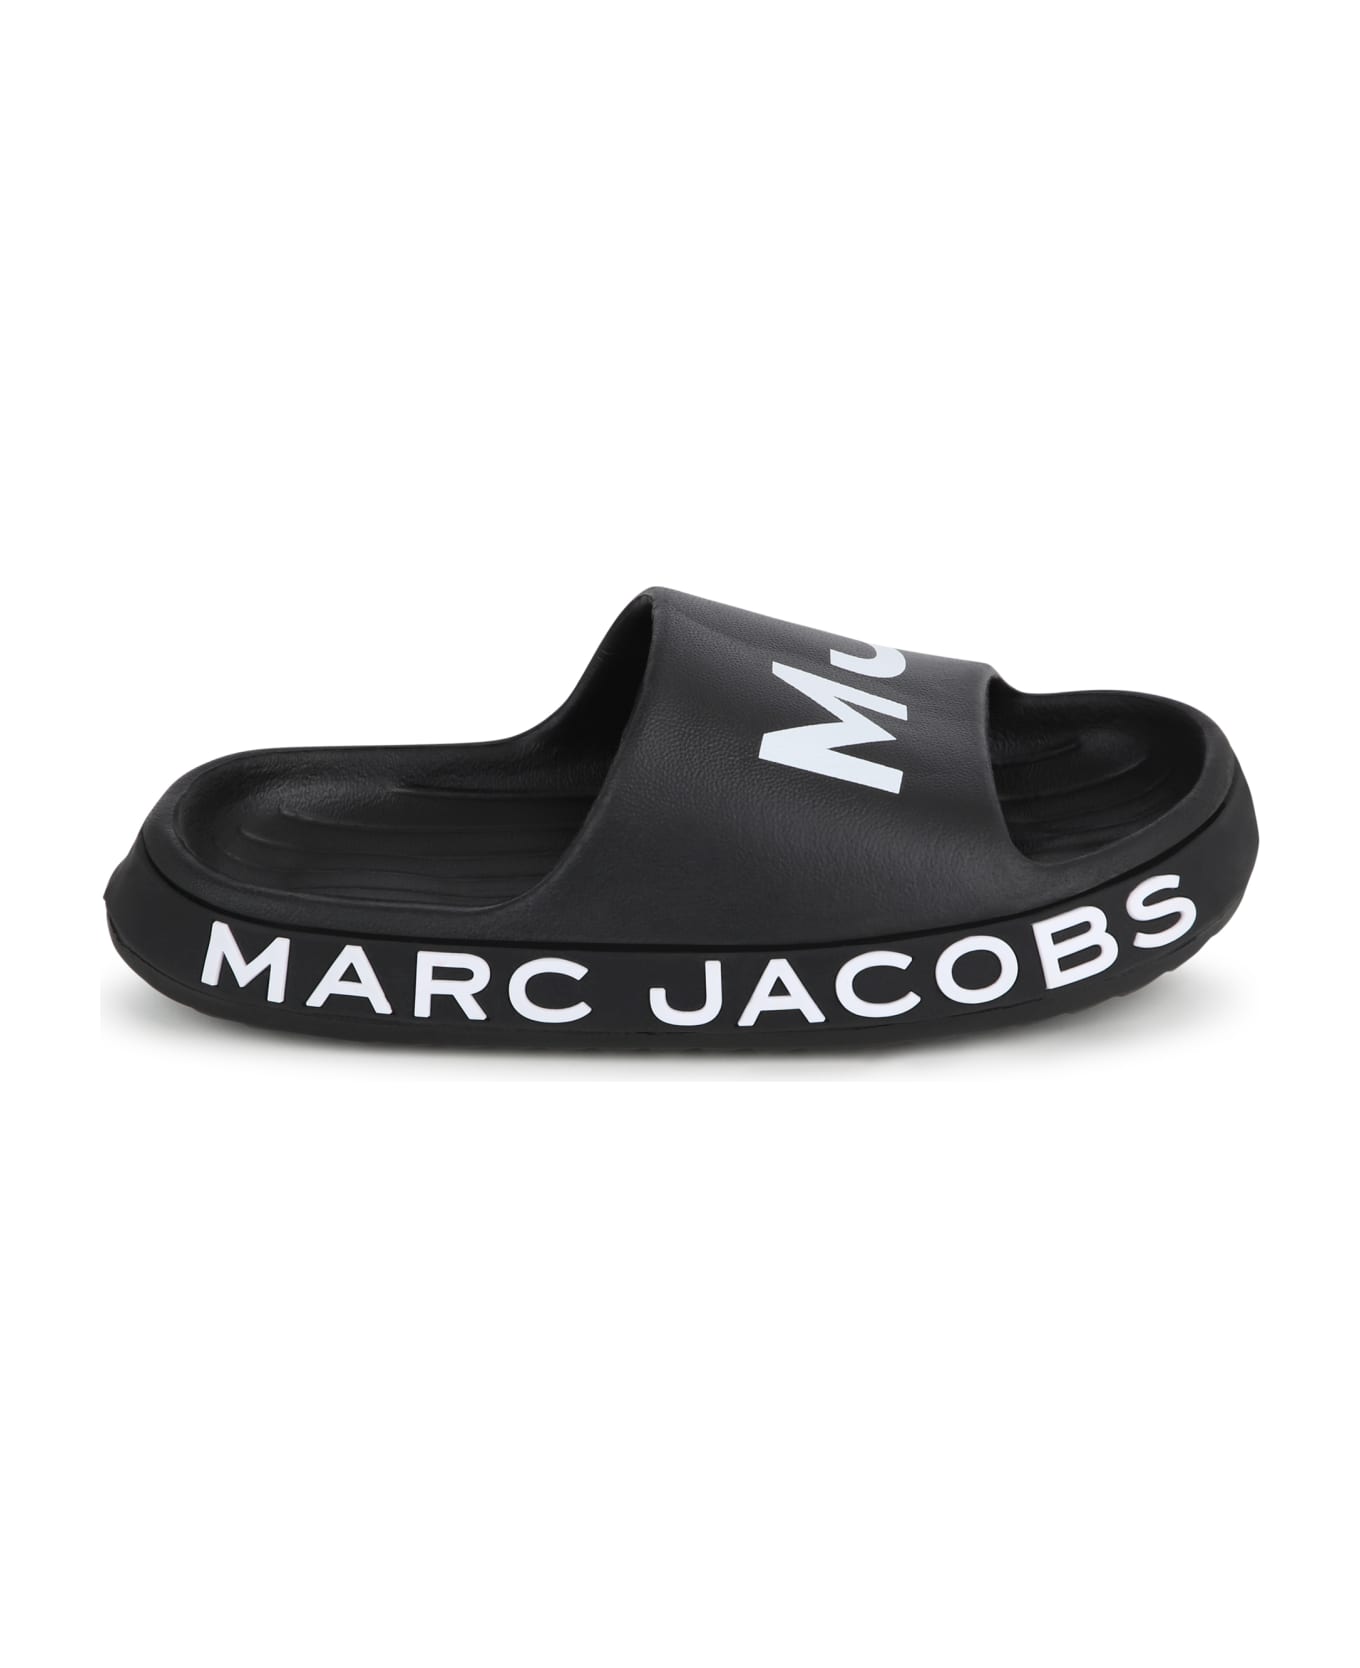 Marc Jacobs Ciabatte Con Logo - Black シューズ